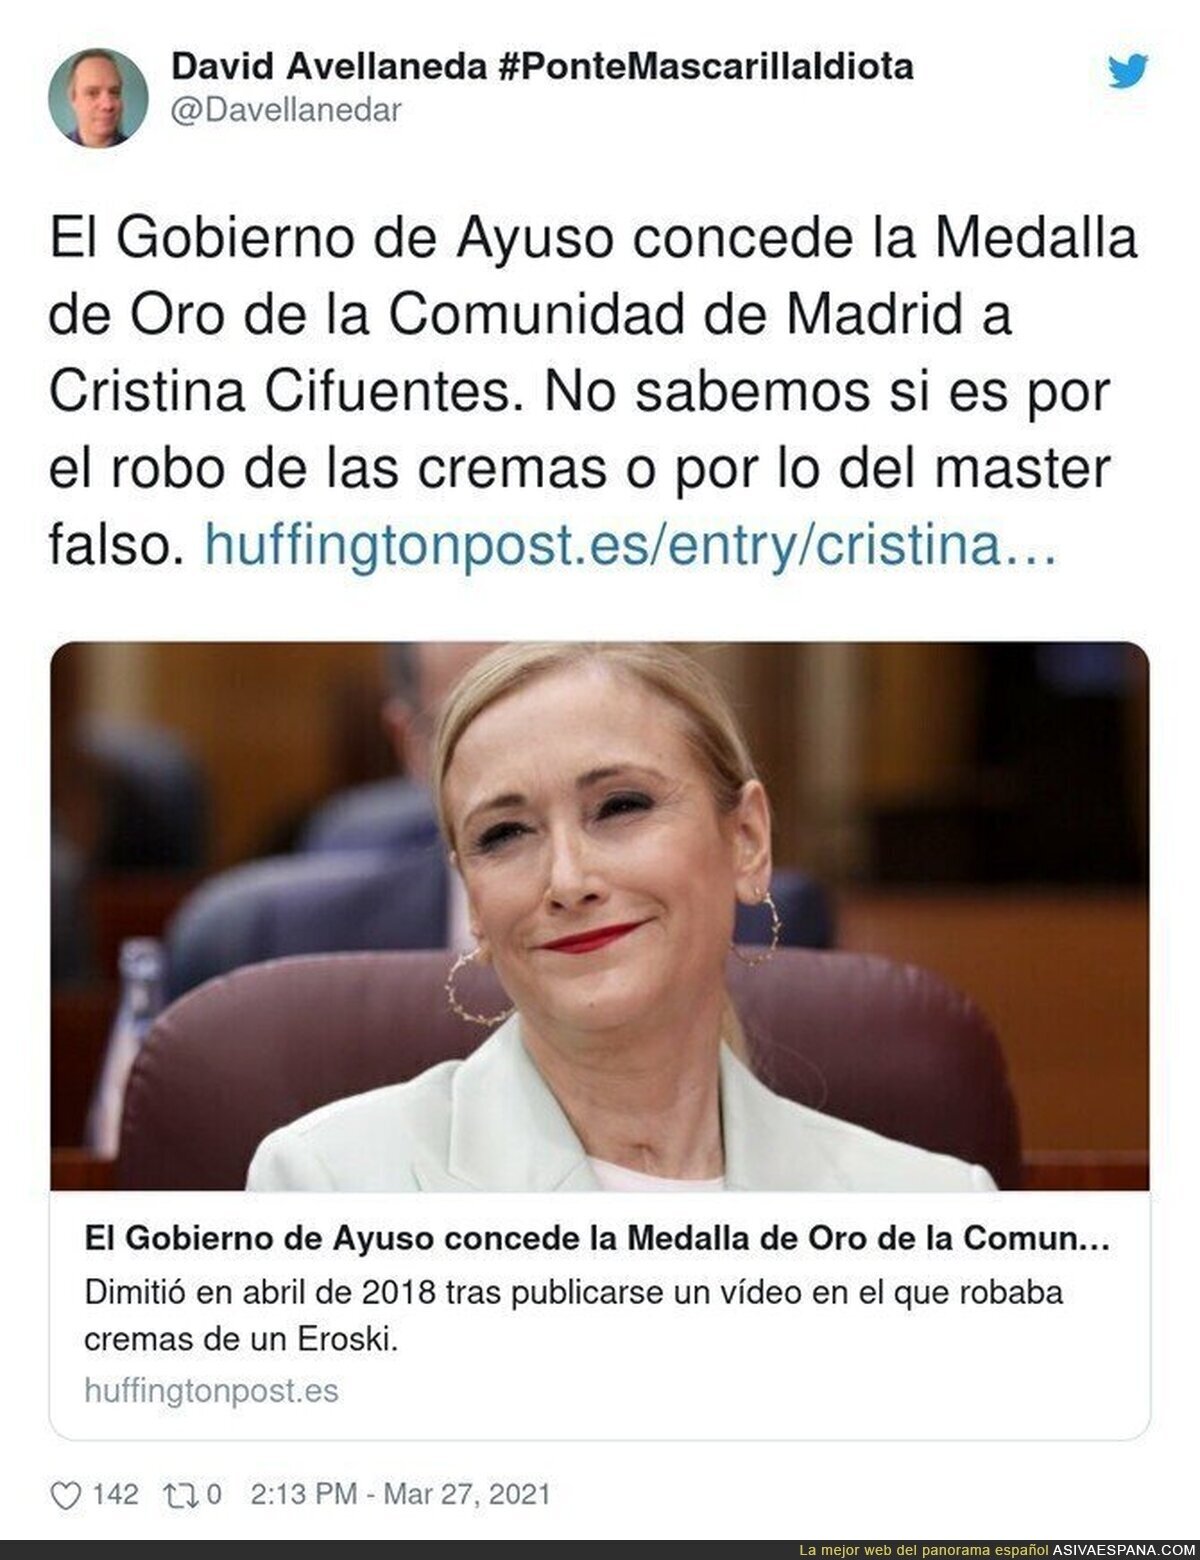 Vergüenza absoluto lo de Ayuso en Madrid ahora con Cristina Cifuentes